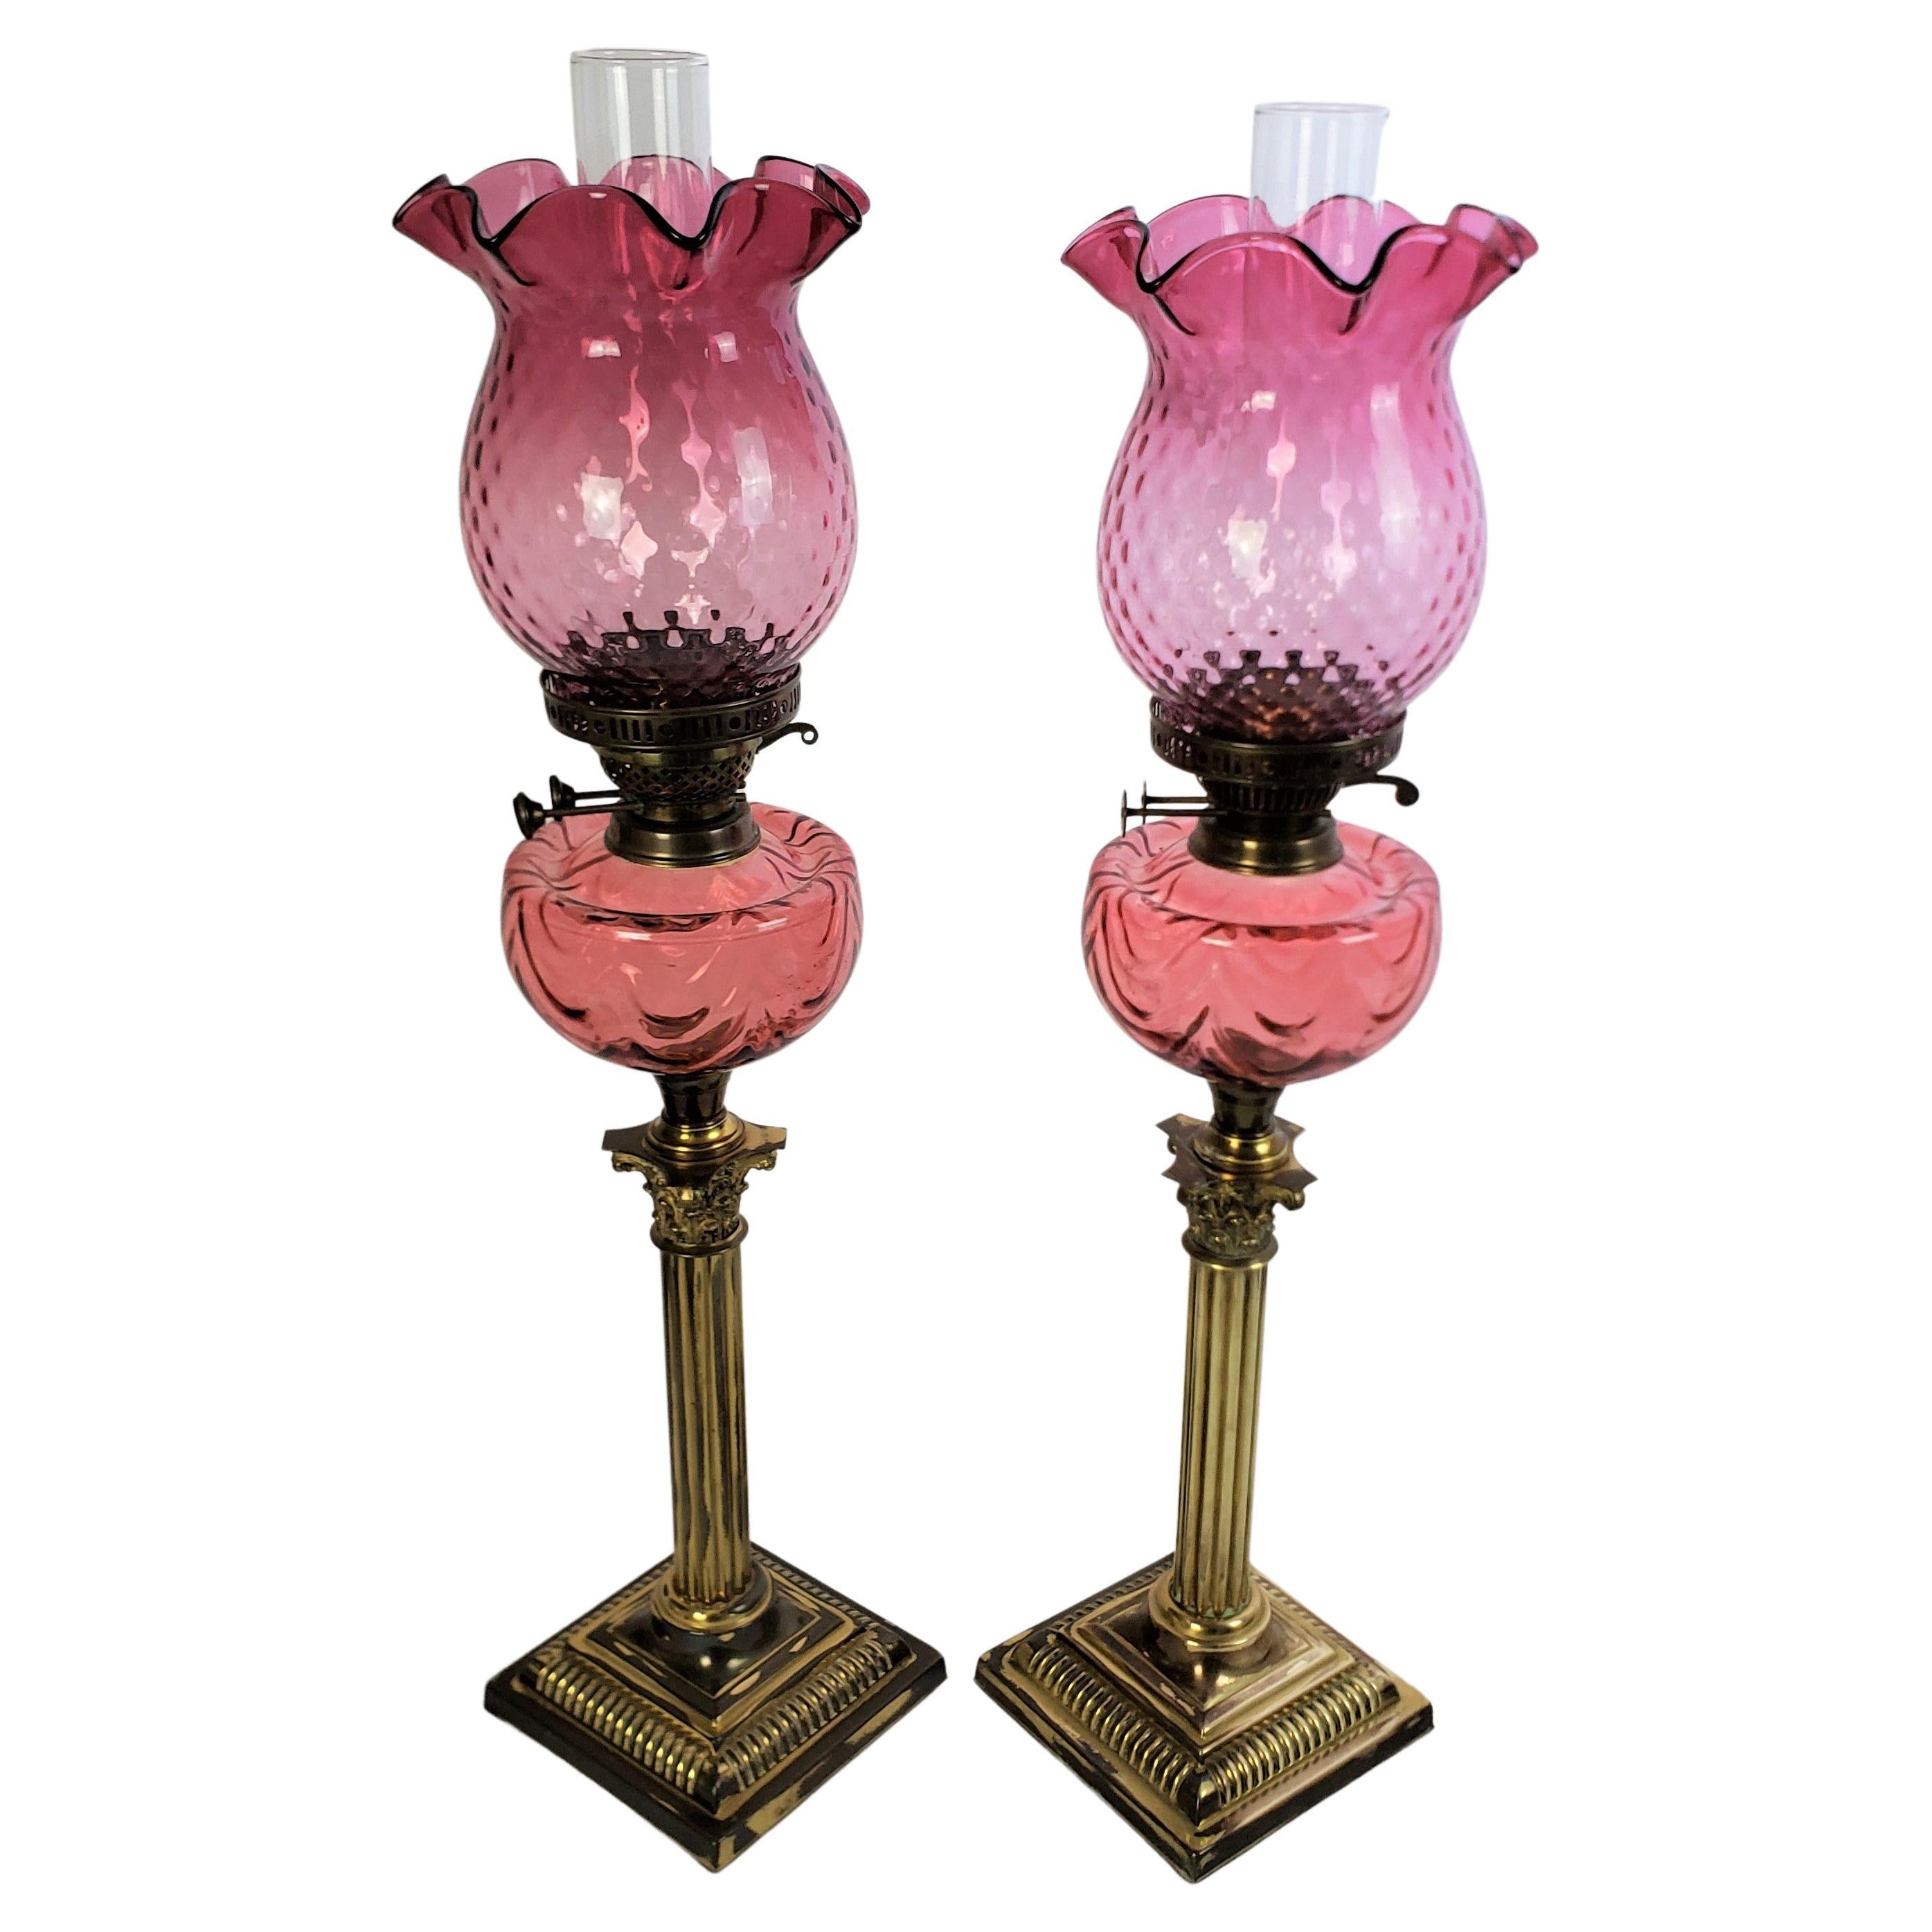 Pair of Antique Cranberry & Brass Corinthian Column Banquet or Parlor Oil Lamps